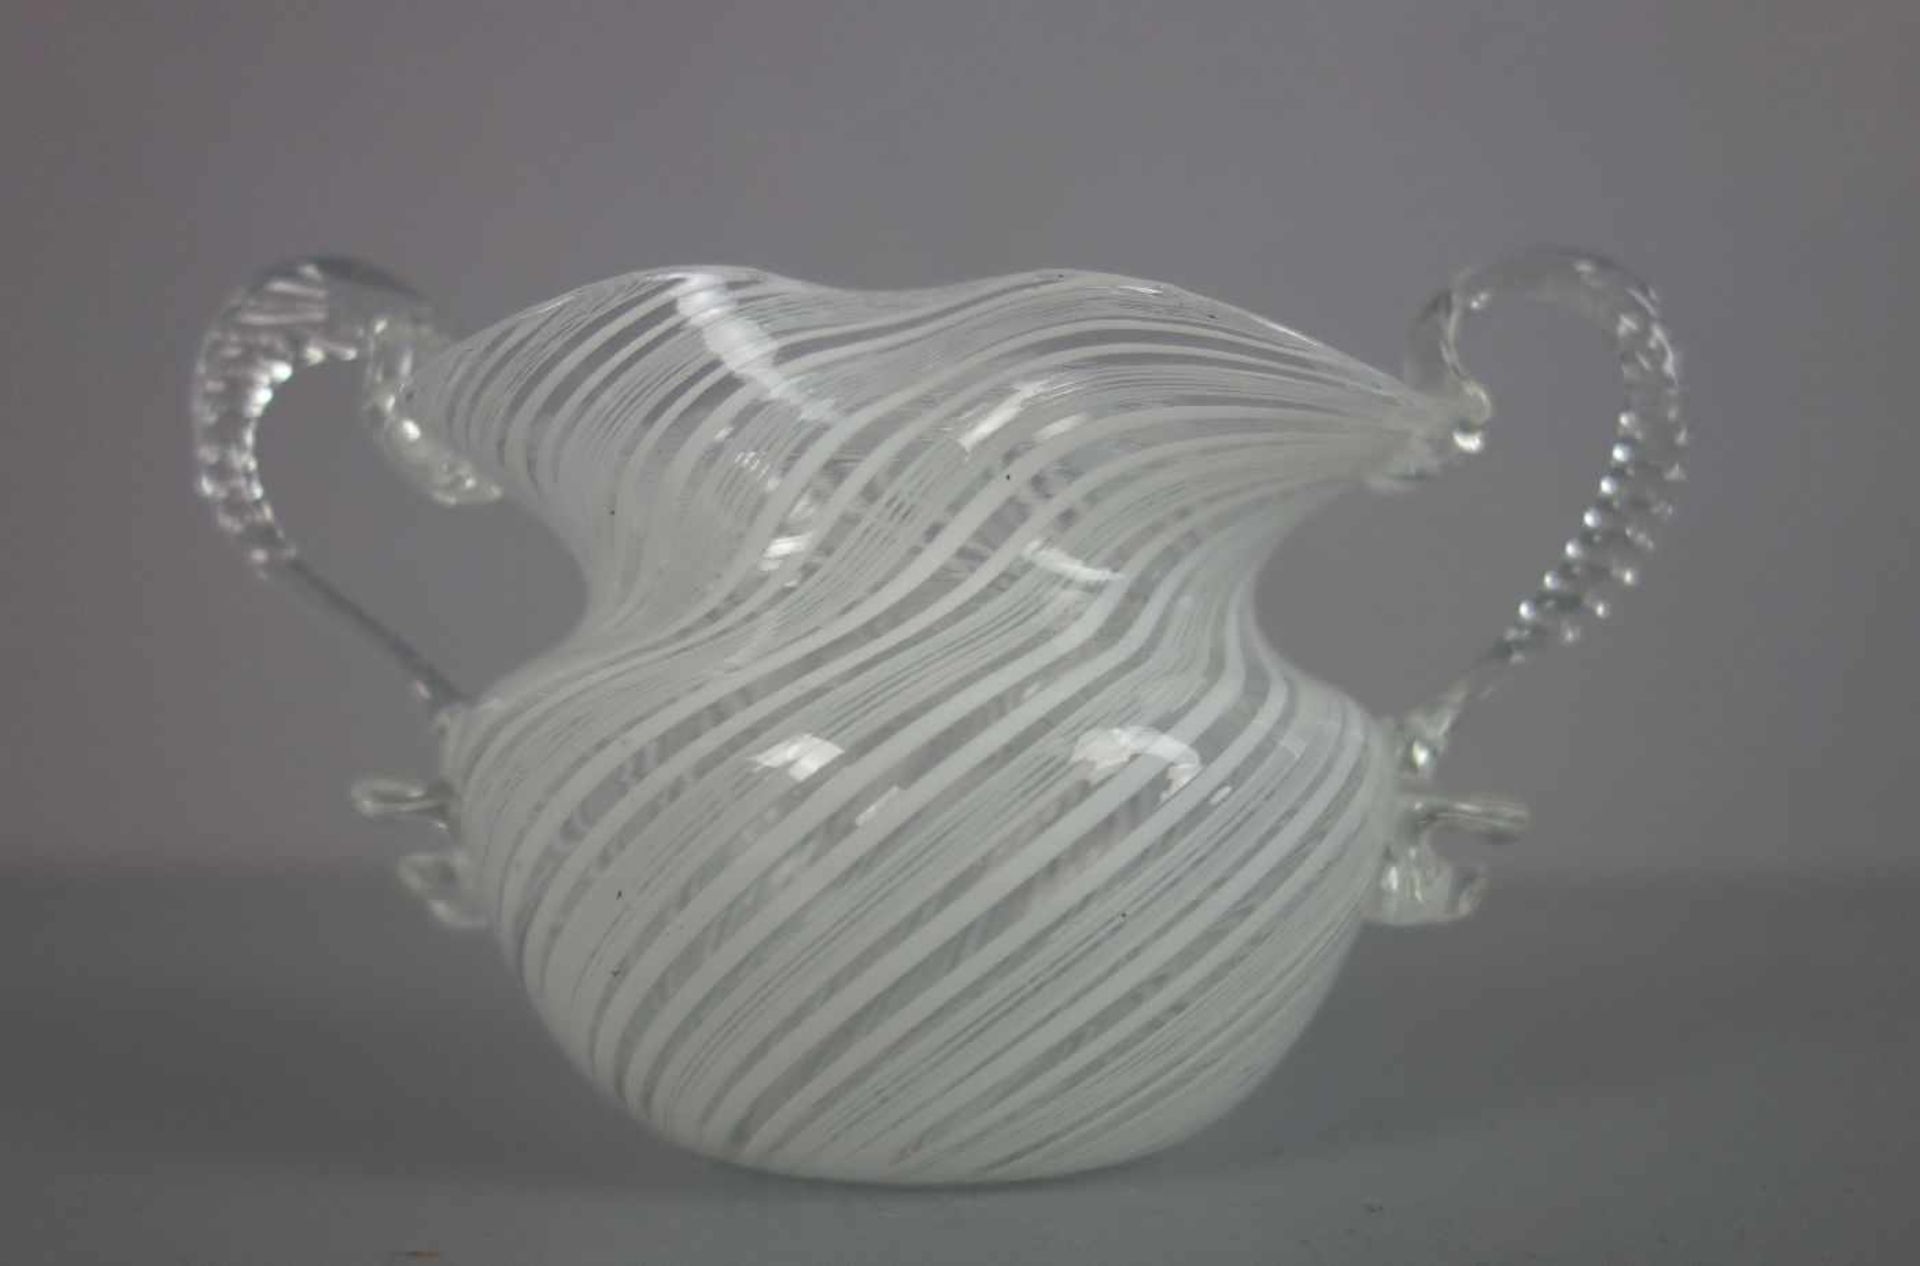 VASE / SCHALE, Klarglas mit eingekämmten weißen Fäden. Gebauchte Form mit unterem Abriss,